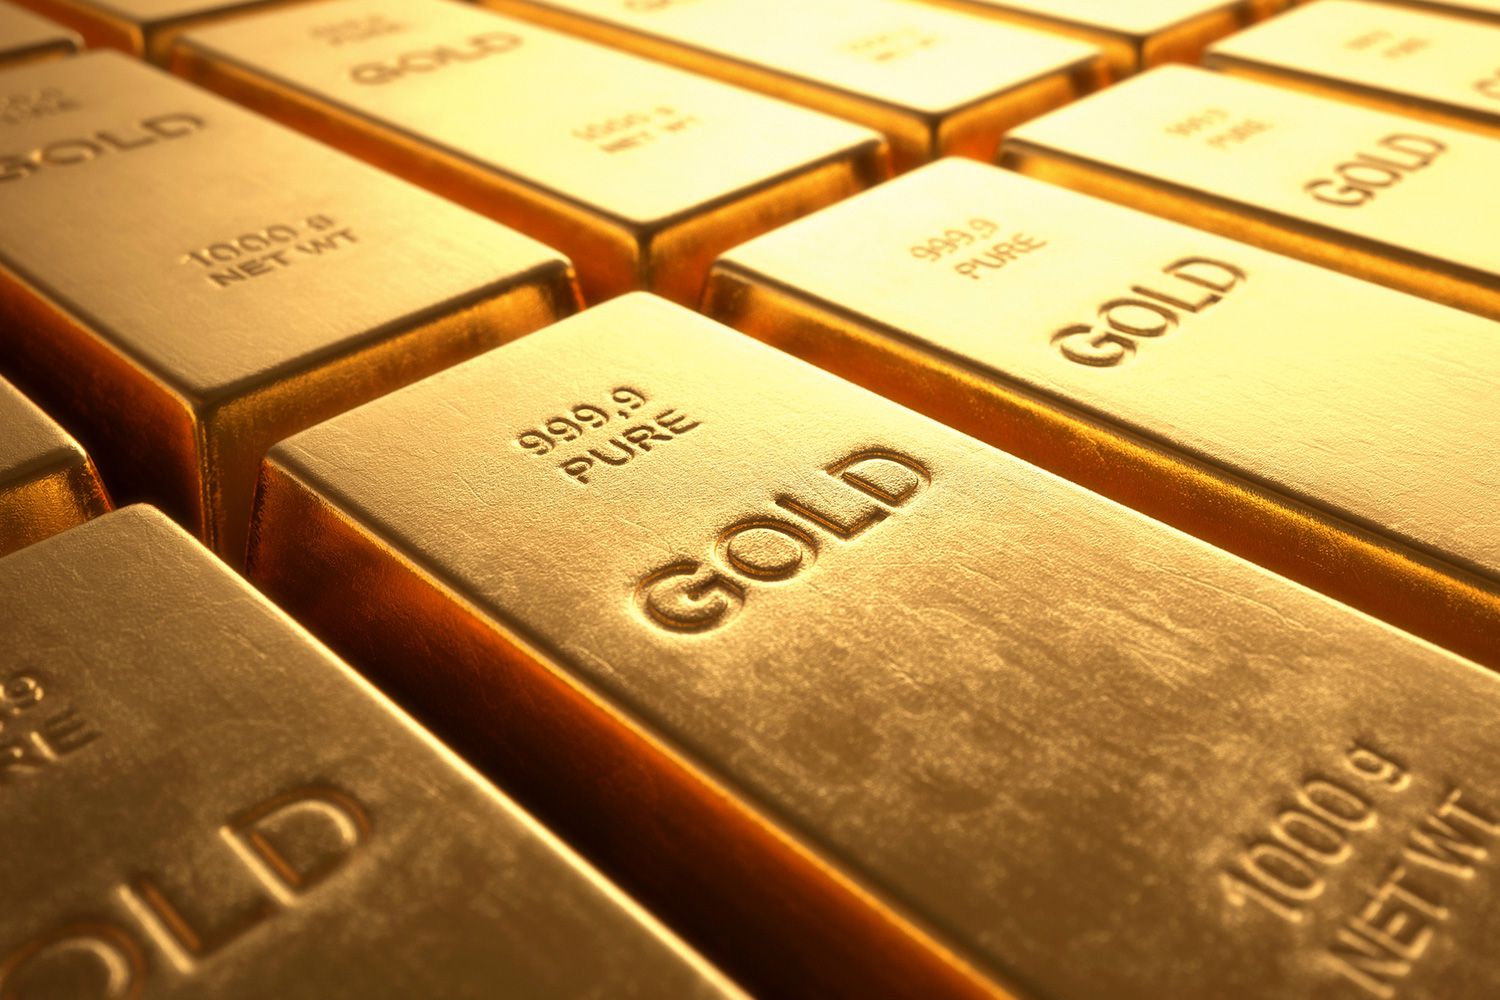 سعر الذهب اليوم السبت 27/4/2019 يسجل ارتفاعًا جديدًا وتوقعات بحدوث تغييرات طفيفة